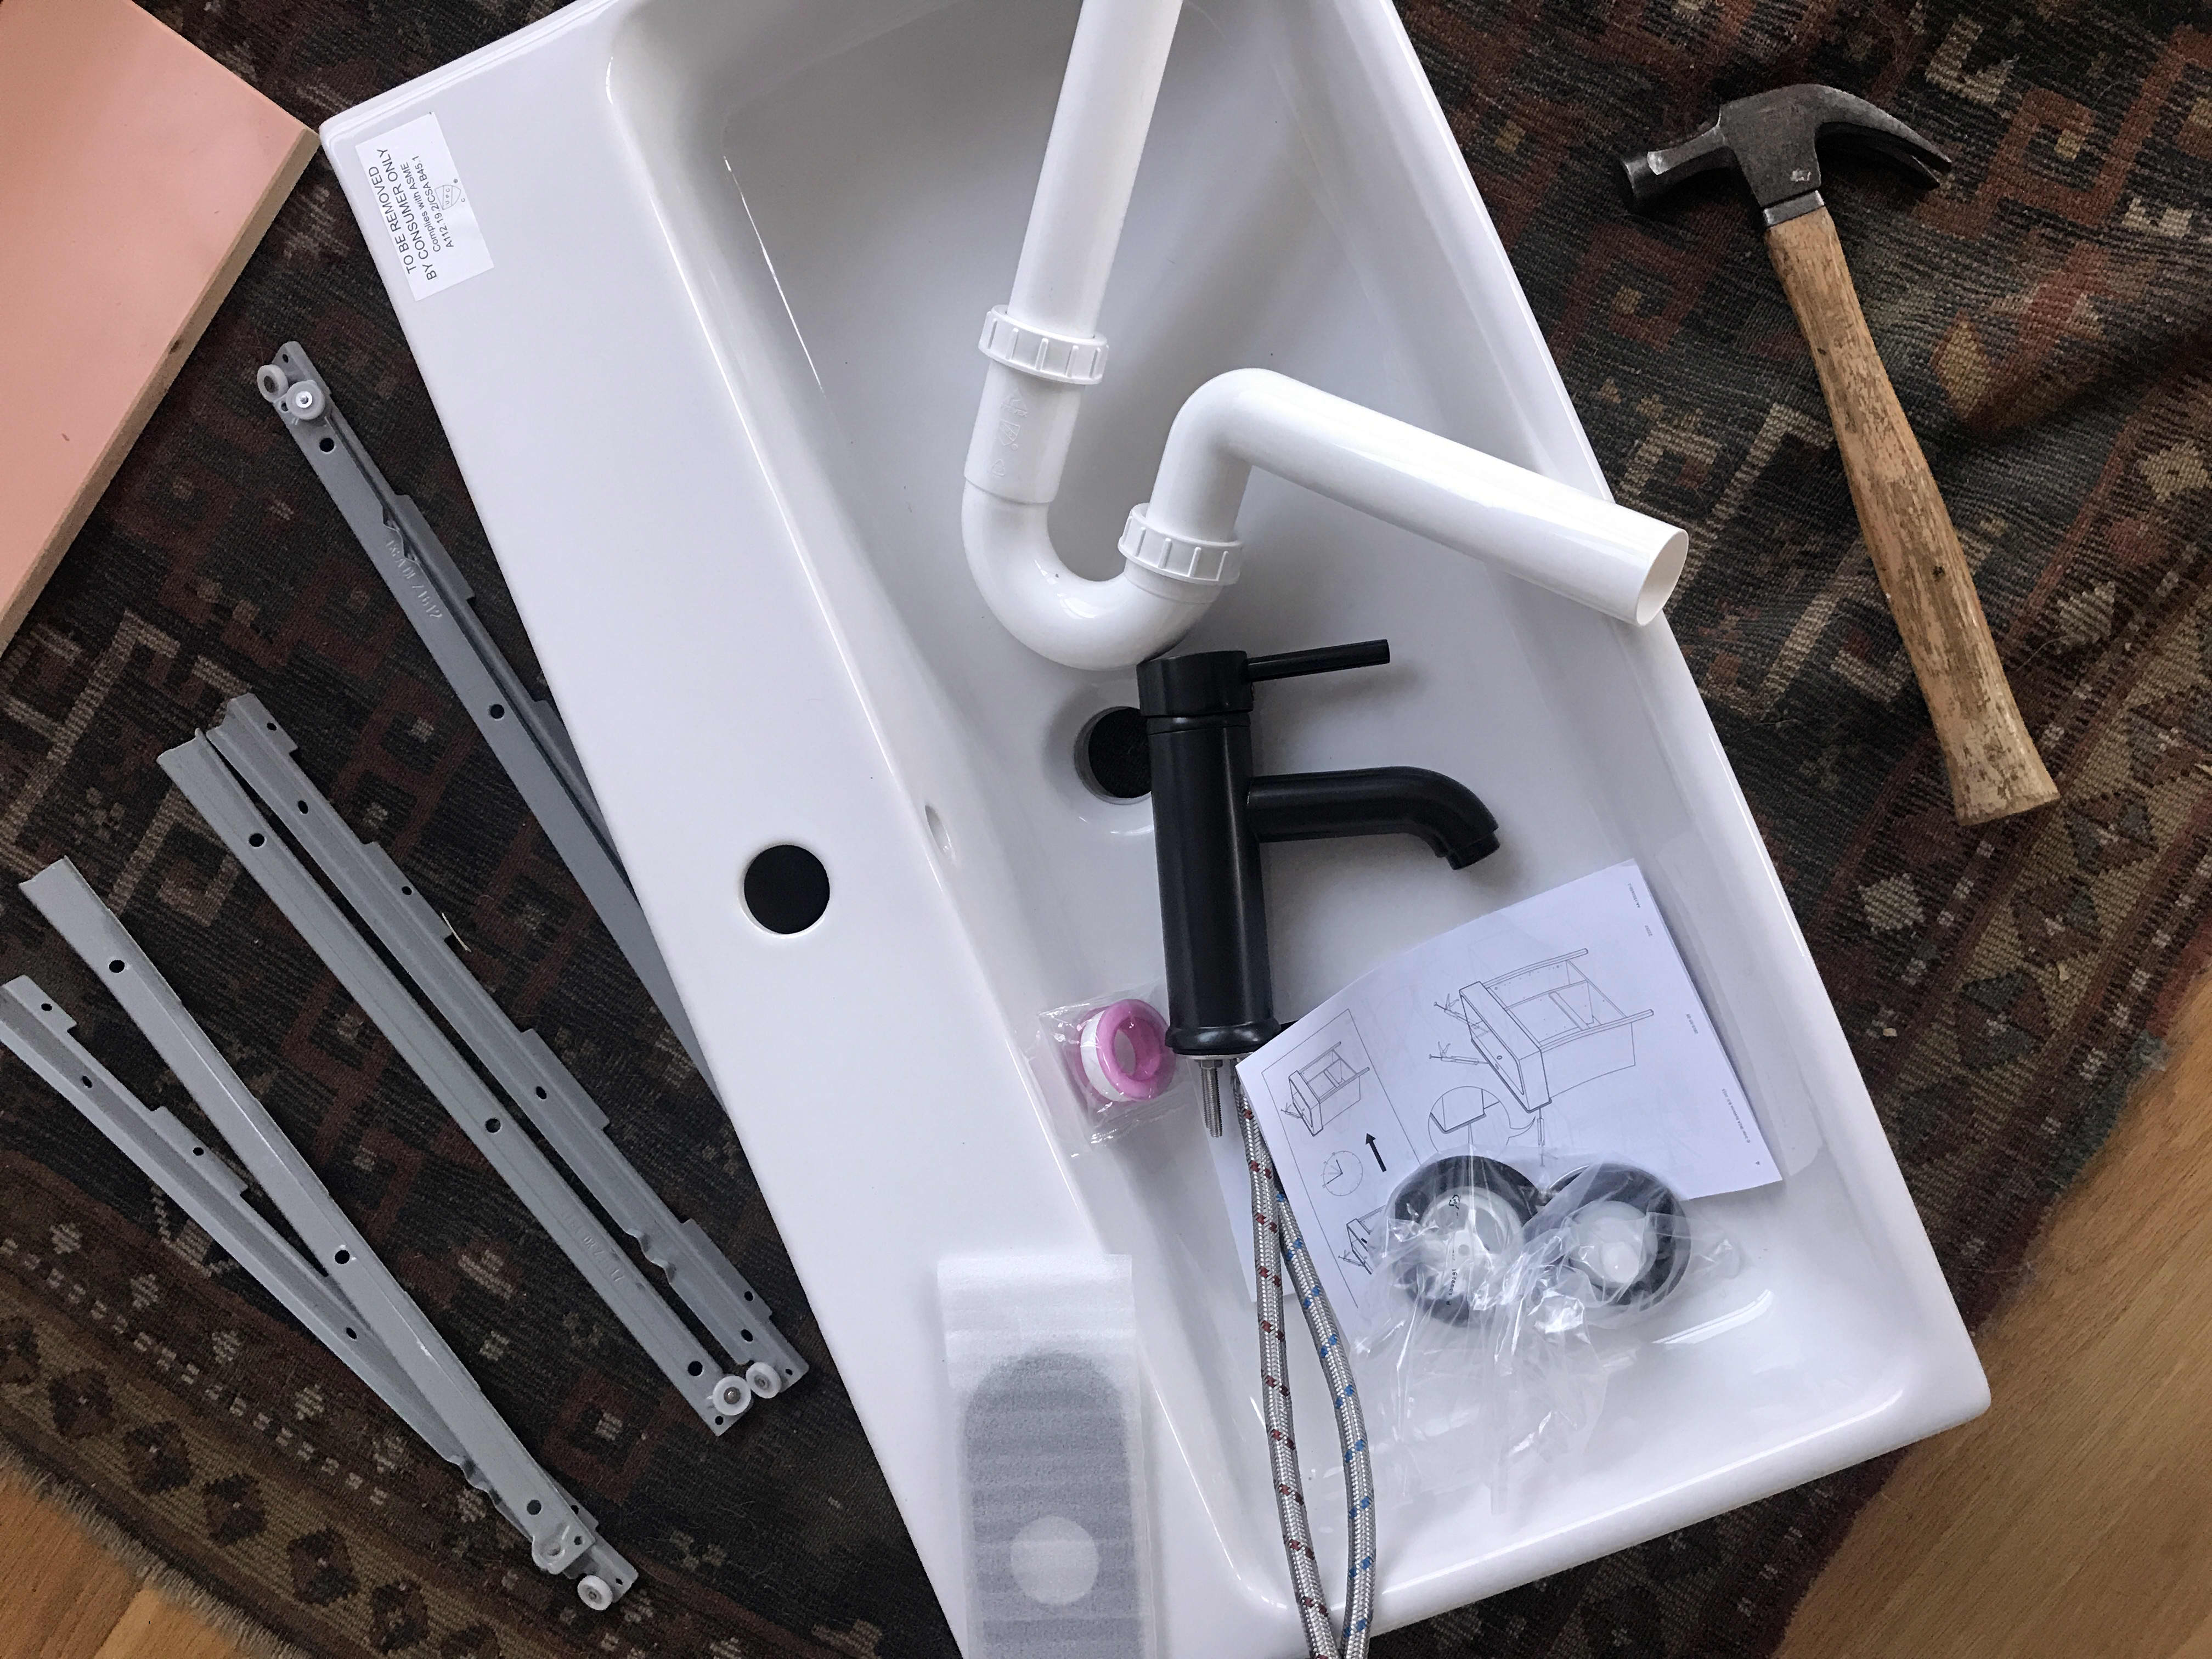 ikea kitchen sink waste trap installation